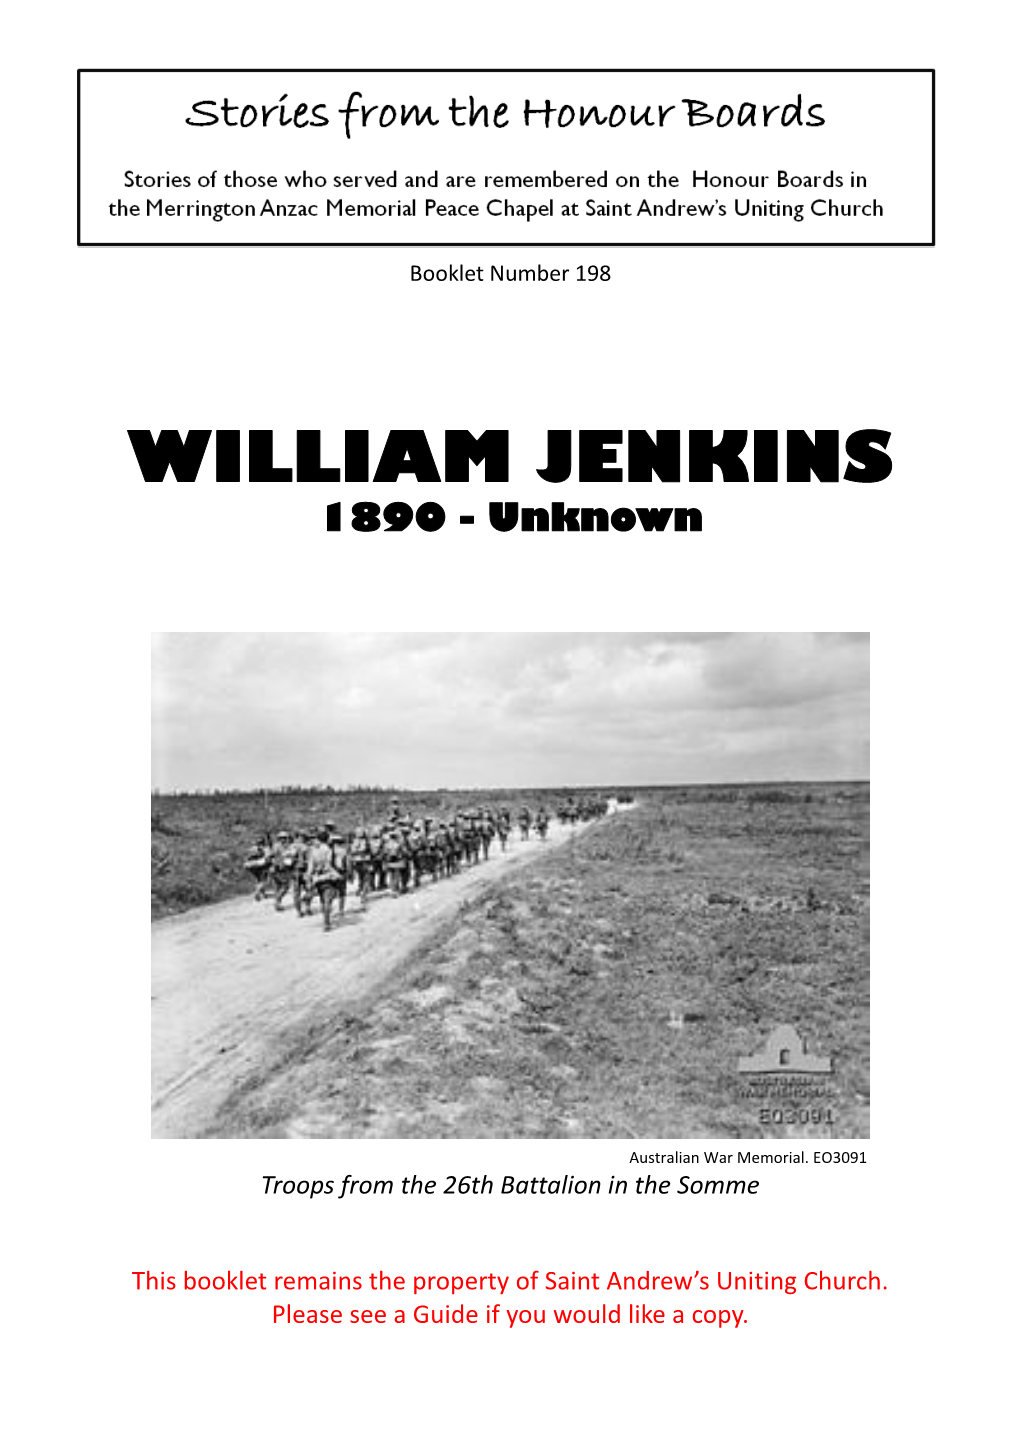 WILLIAM JENKINS 1890 - Unknown